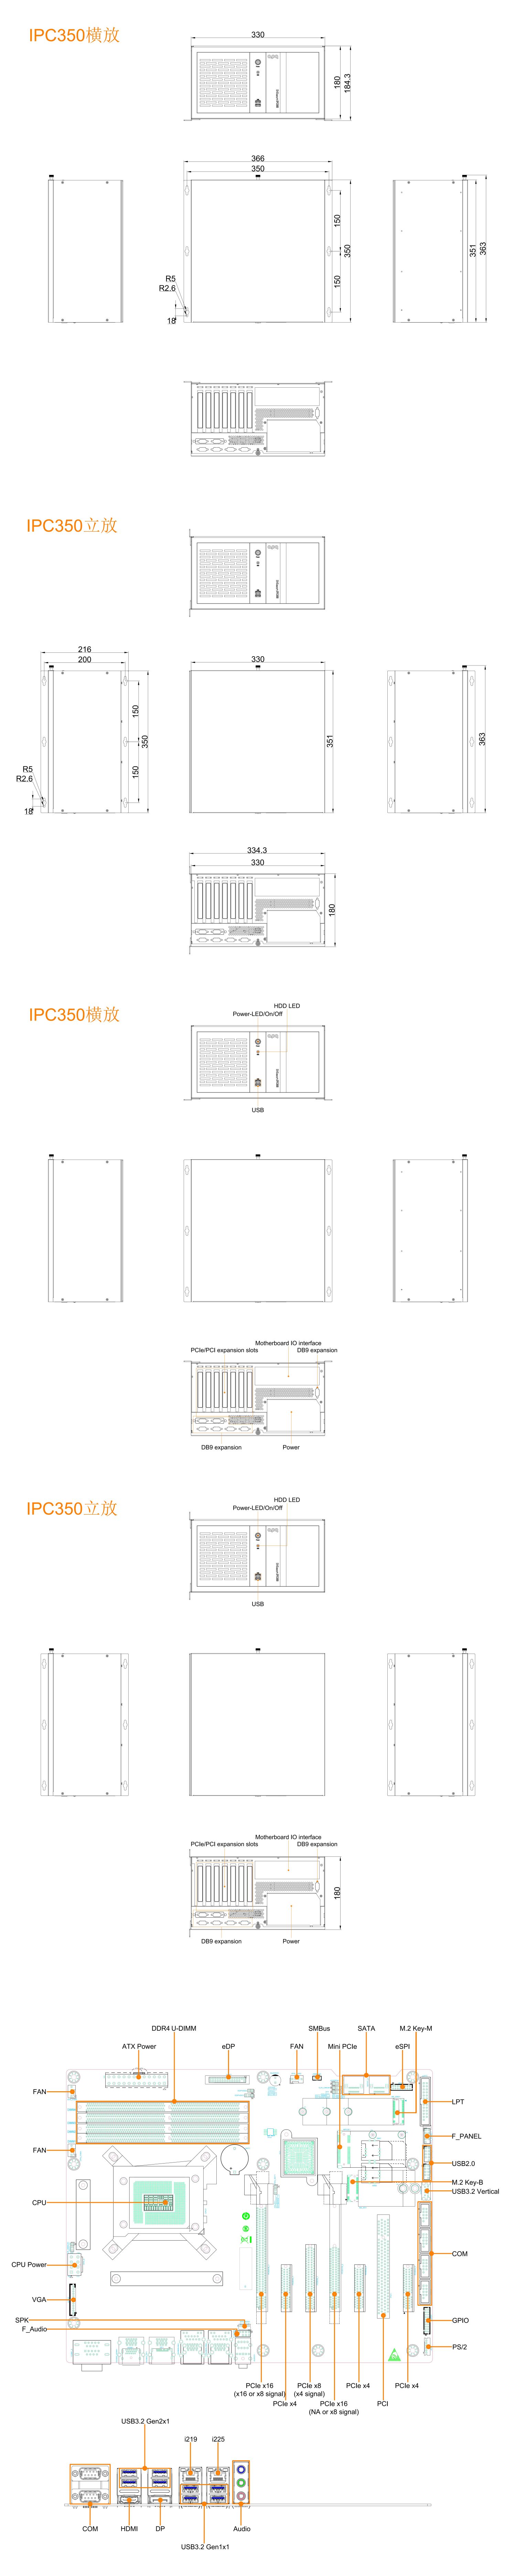 IPC350-Q670_SpecSheet_APQ